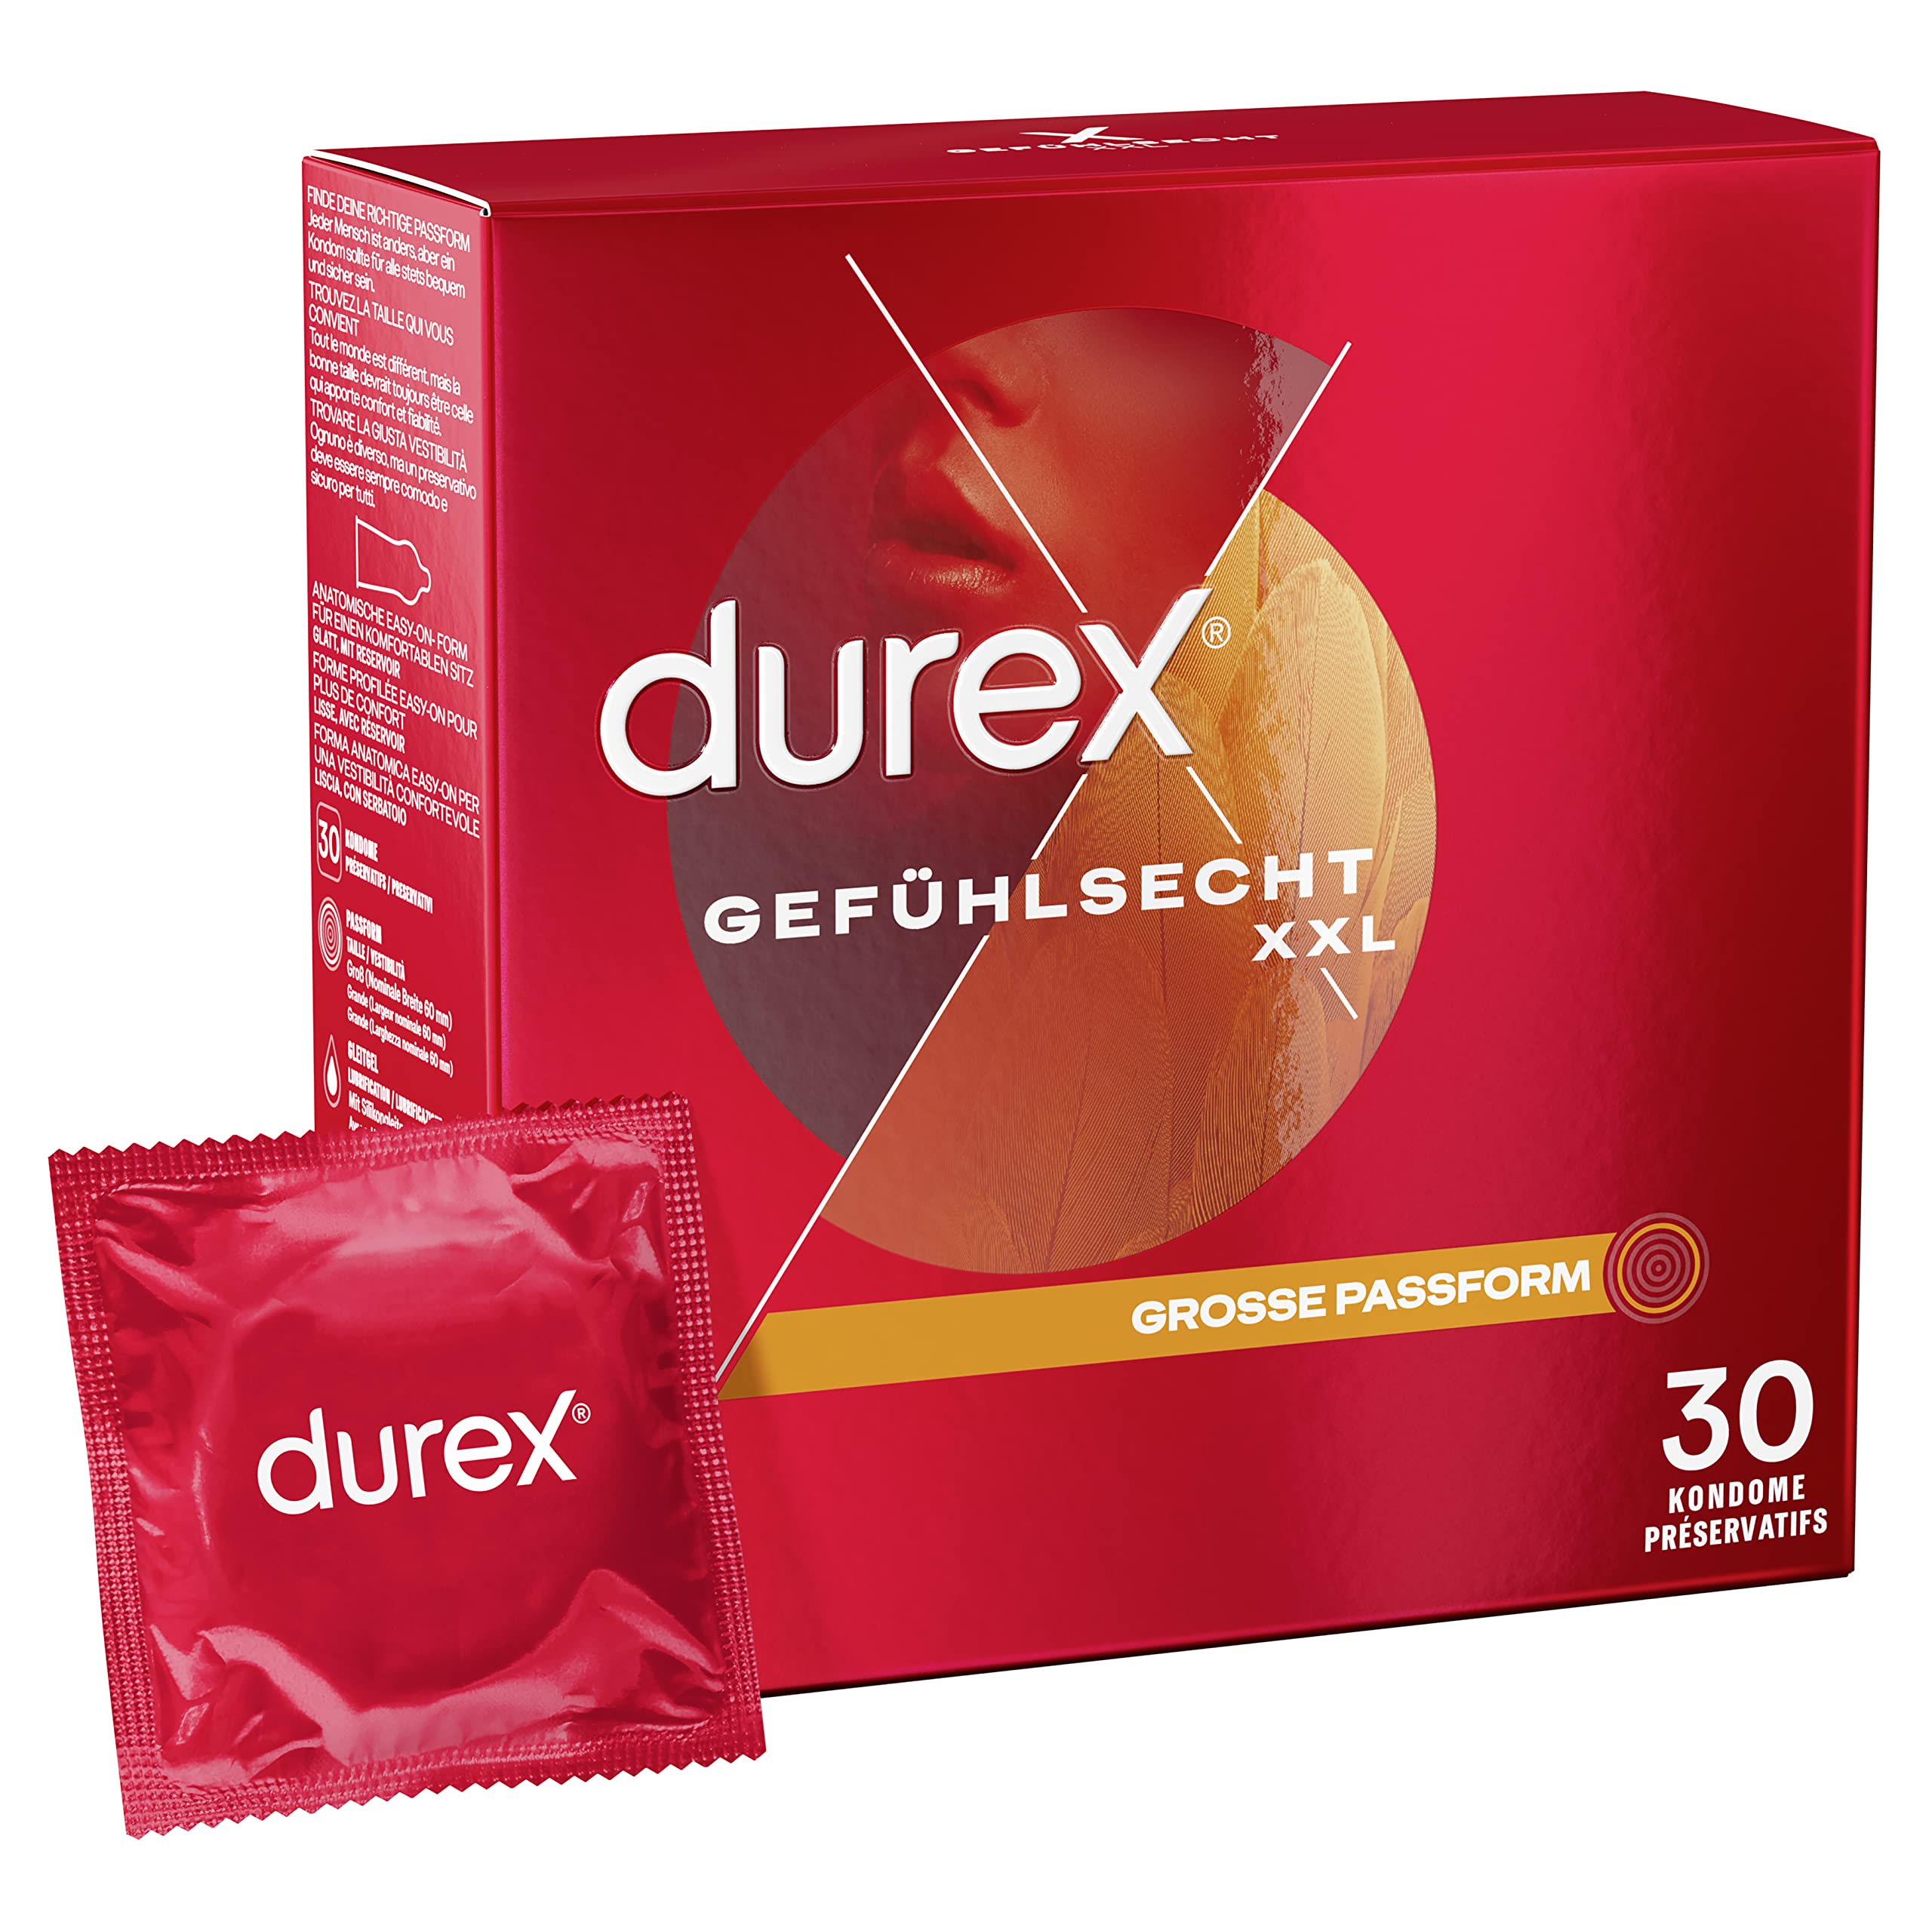 Durex Gefühlsecht XXL Kondome – Dünne Kondome mit großer Passform & mit Silikongleitgel befeuchtet, transparent, angenehmer Geruch - für einen komfortablen Sit – 30er Pack (1 x 30 Stück)